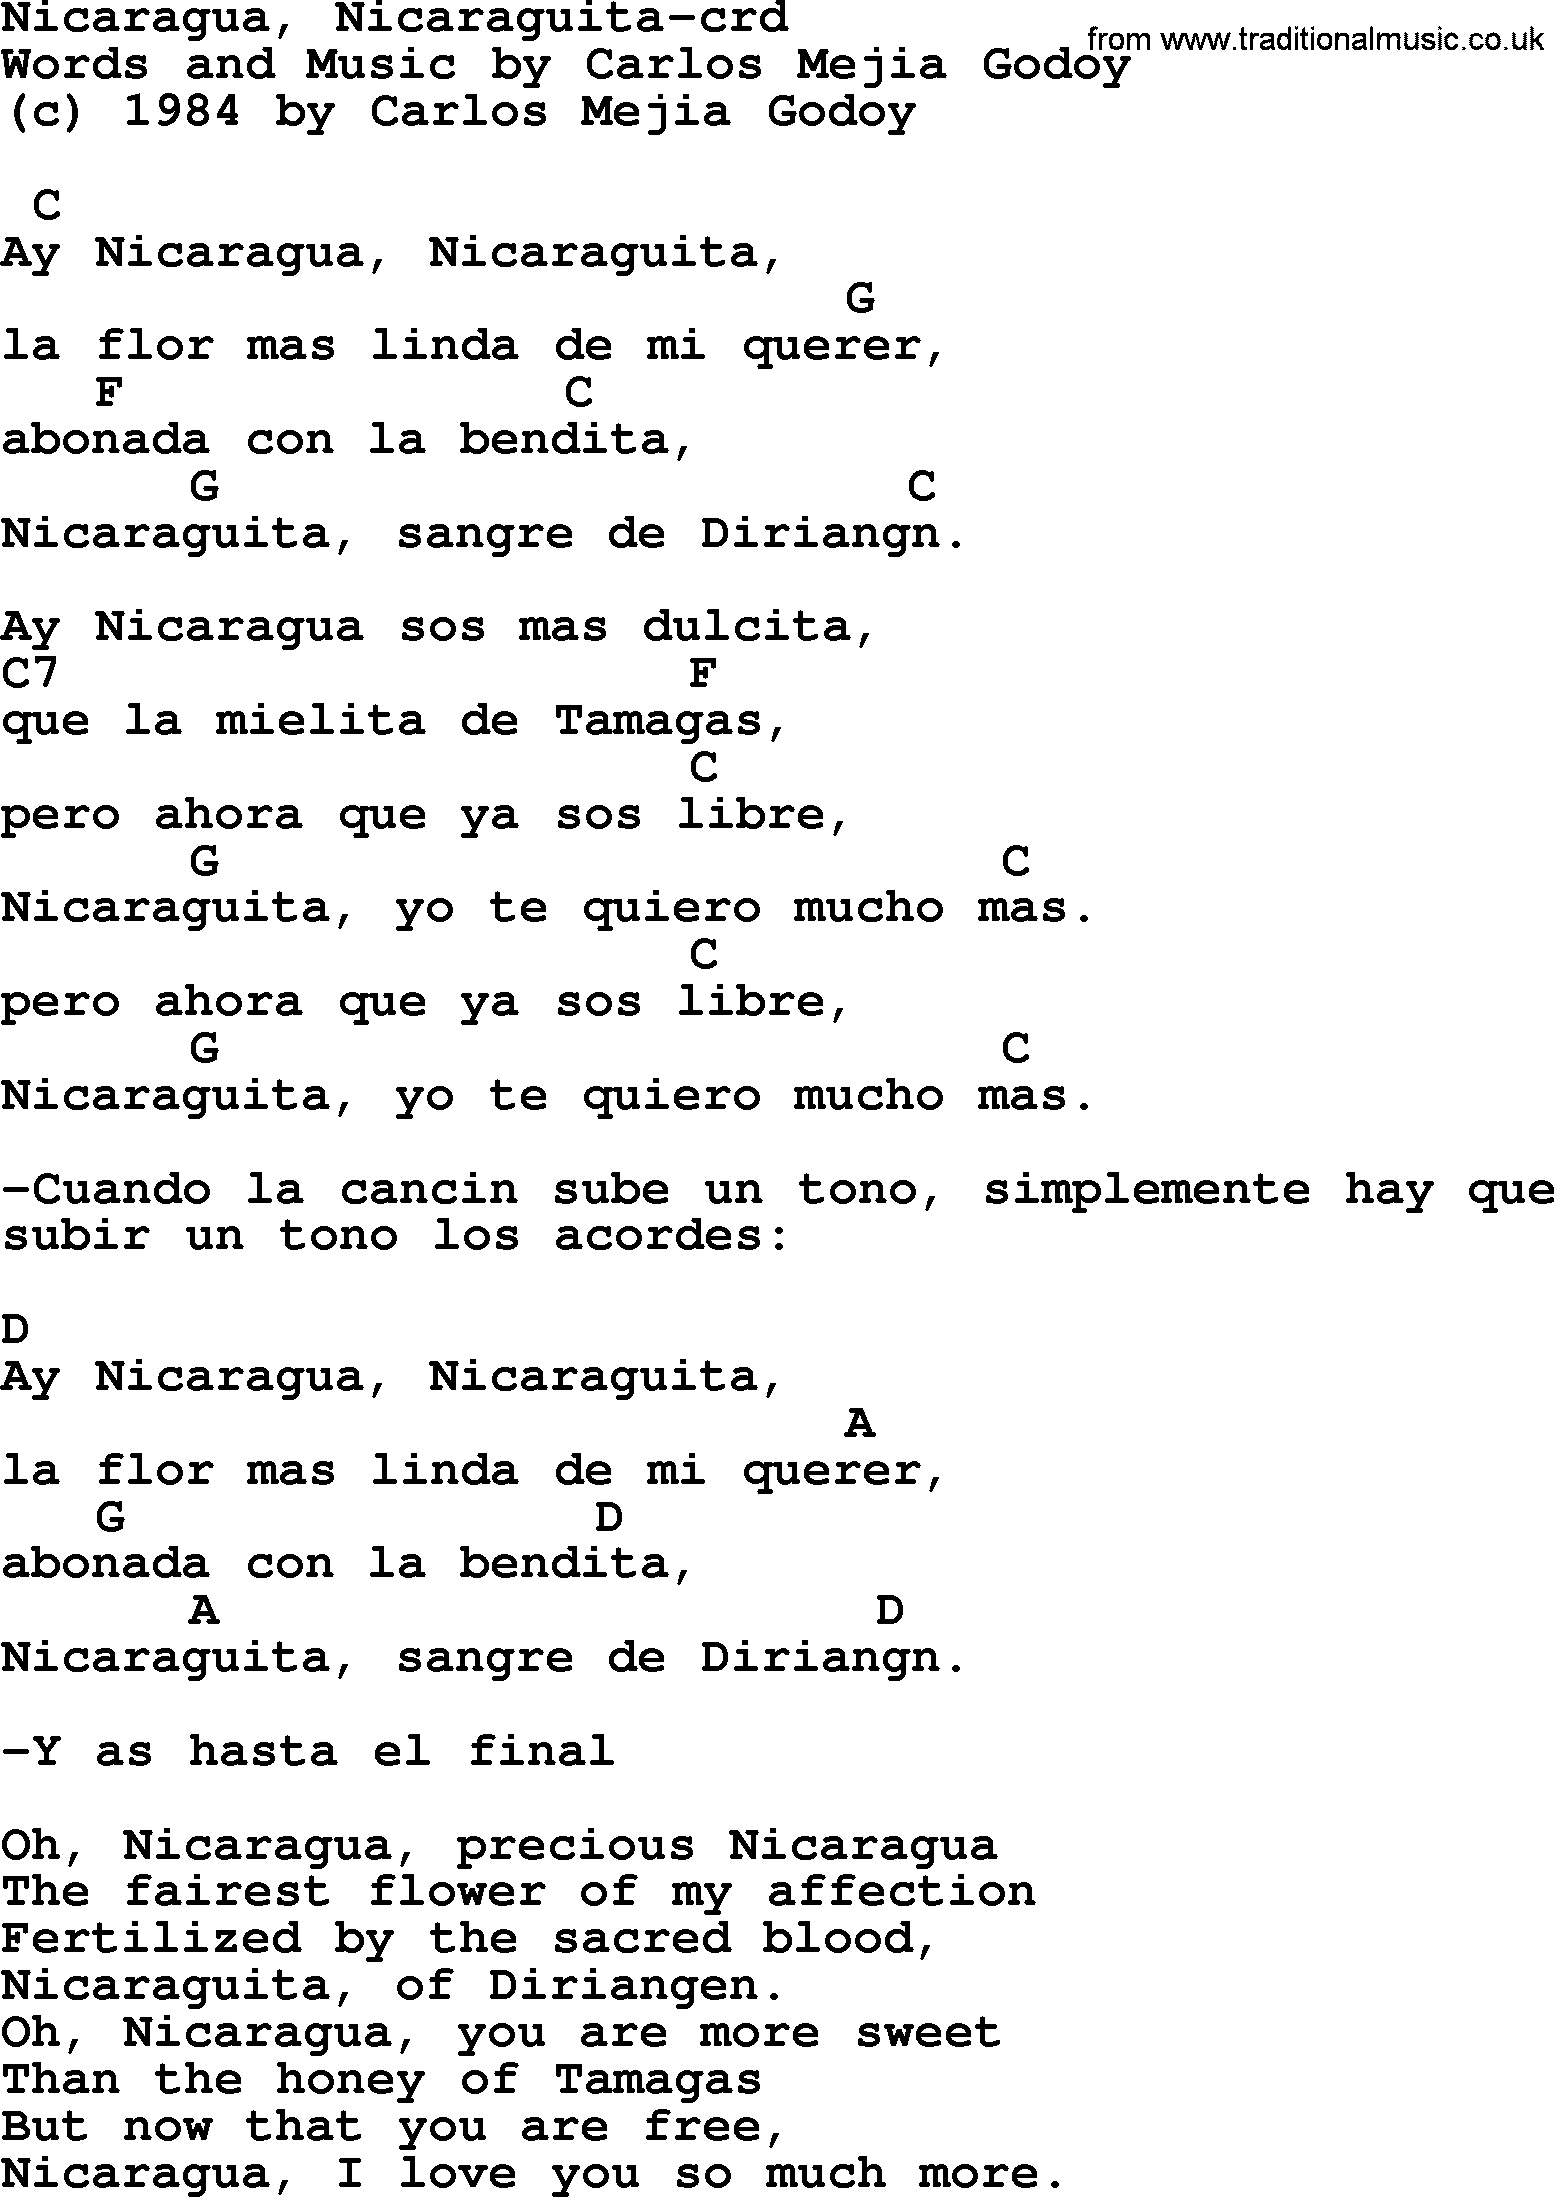 Pete Seeger song Nicaragua, Nicaraguita, lyrics and chords